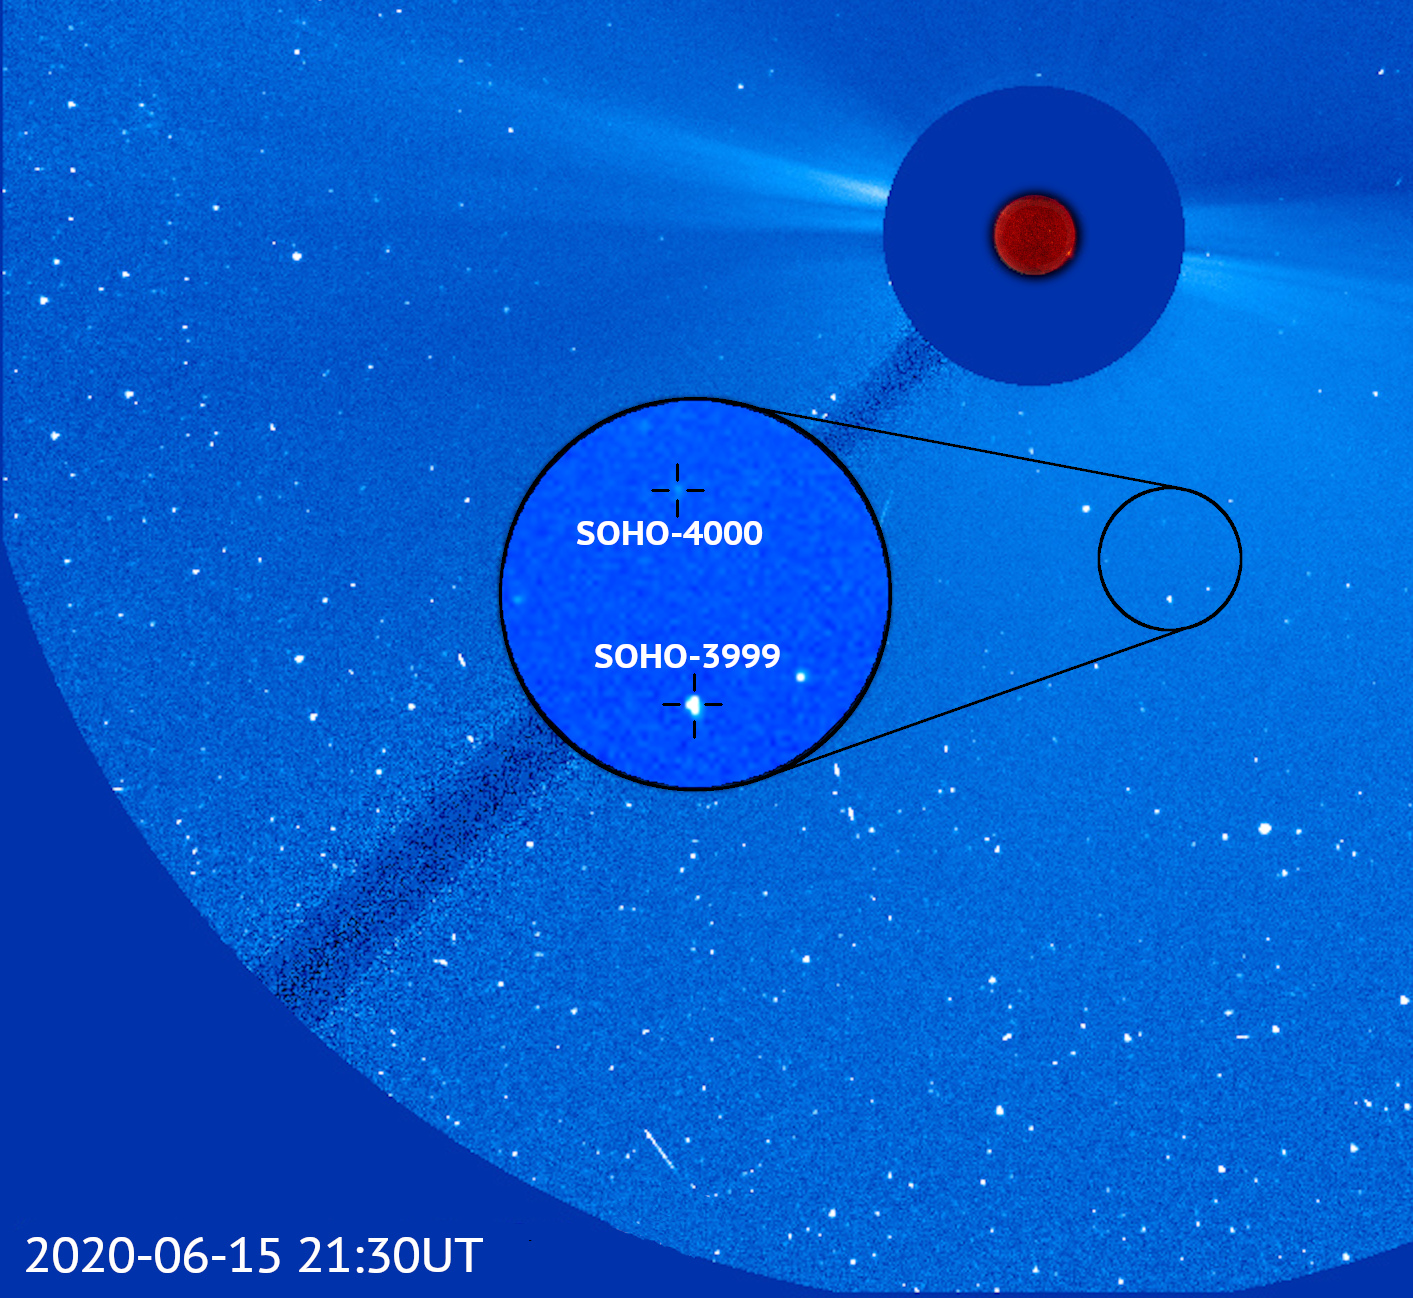 El cometa 4000 se ve aquí en una imagen de la nave espacial junto con el cometa 3.999 descubierto también por SOHO. Los dos cometas están relativamente cerca, a aproximadamente 1.650.000 kilómetros de distancia, lo que sugiere que podrían haberse conectado entre sí hace tan solo unos años. Crédito: ESA / NASA / SOHO / Karl Battams